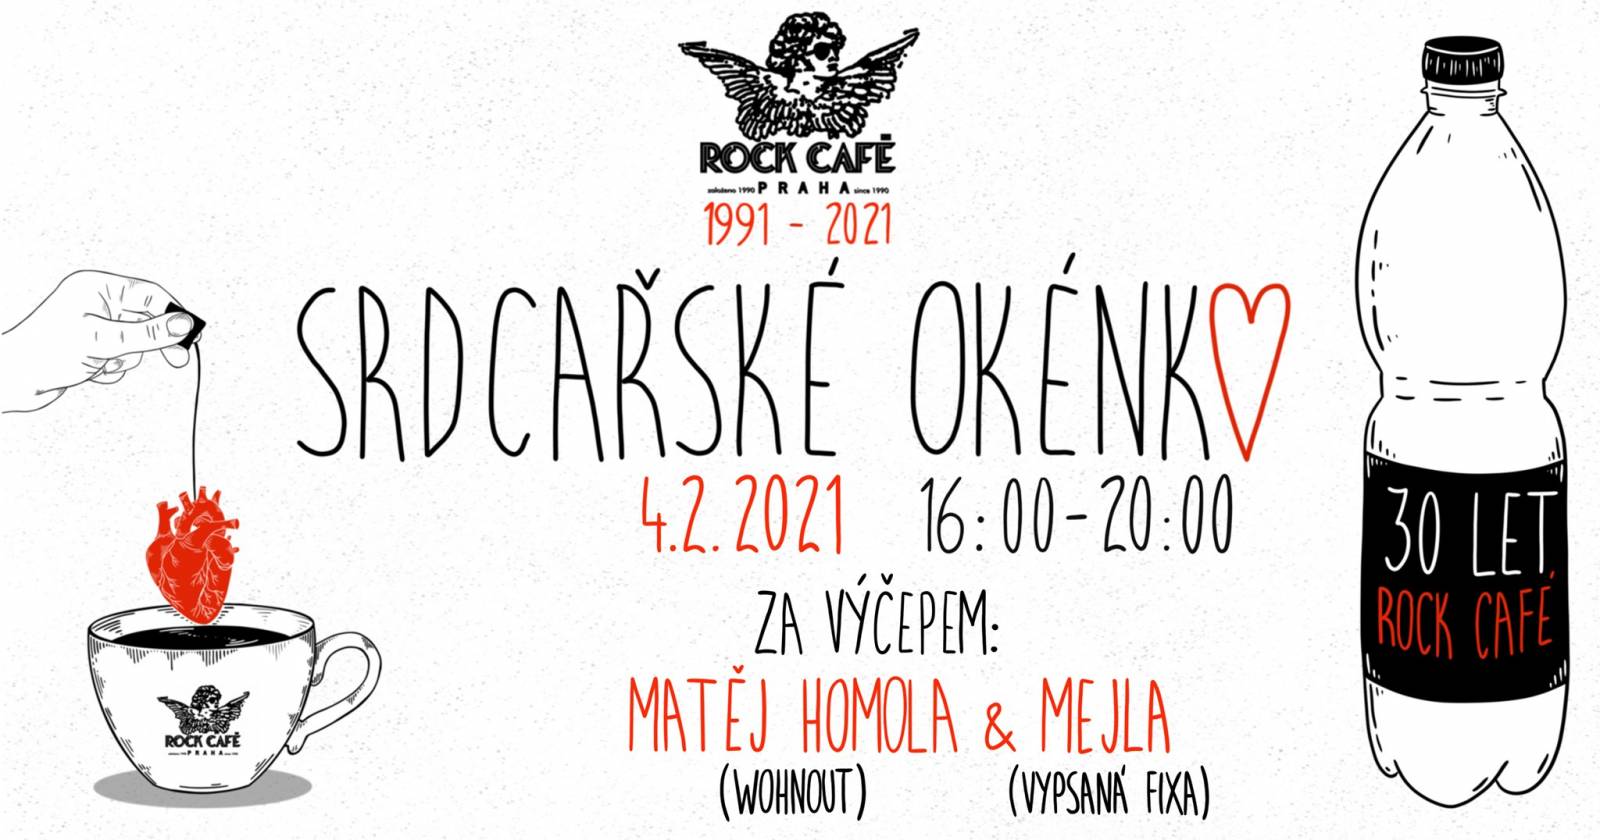 Srdcařské okénko klubu Rock Café pokračuje. Ve čtvrtek spojí síly Wohnout a vypsaná fiXa